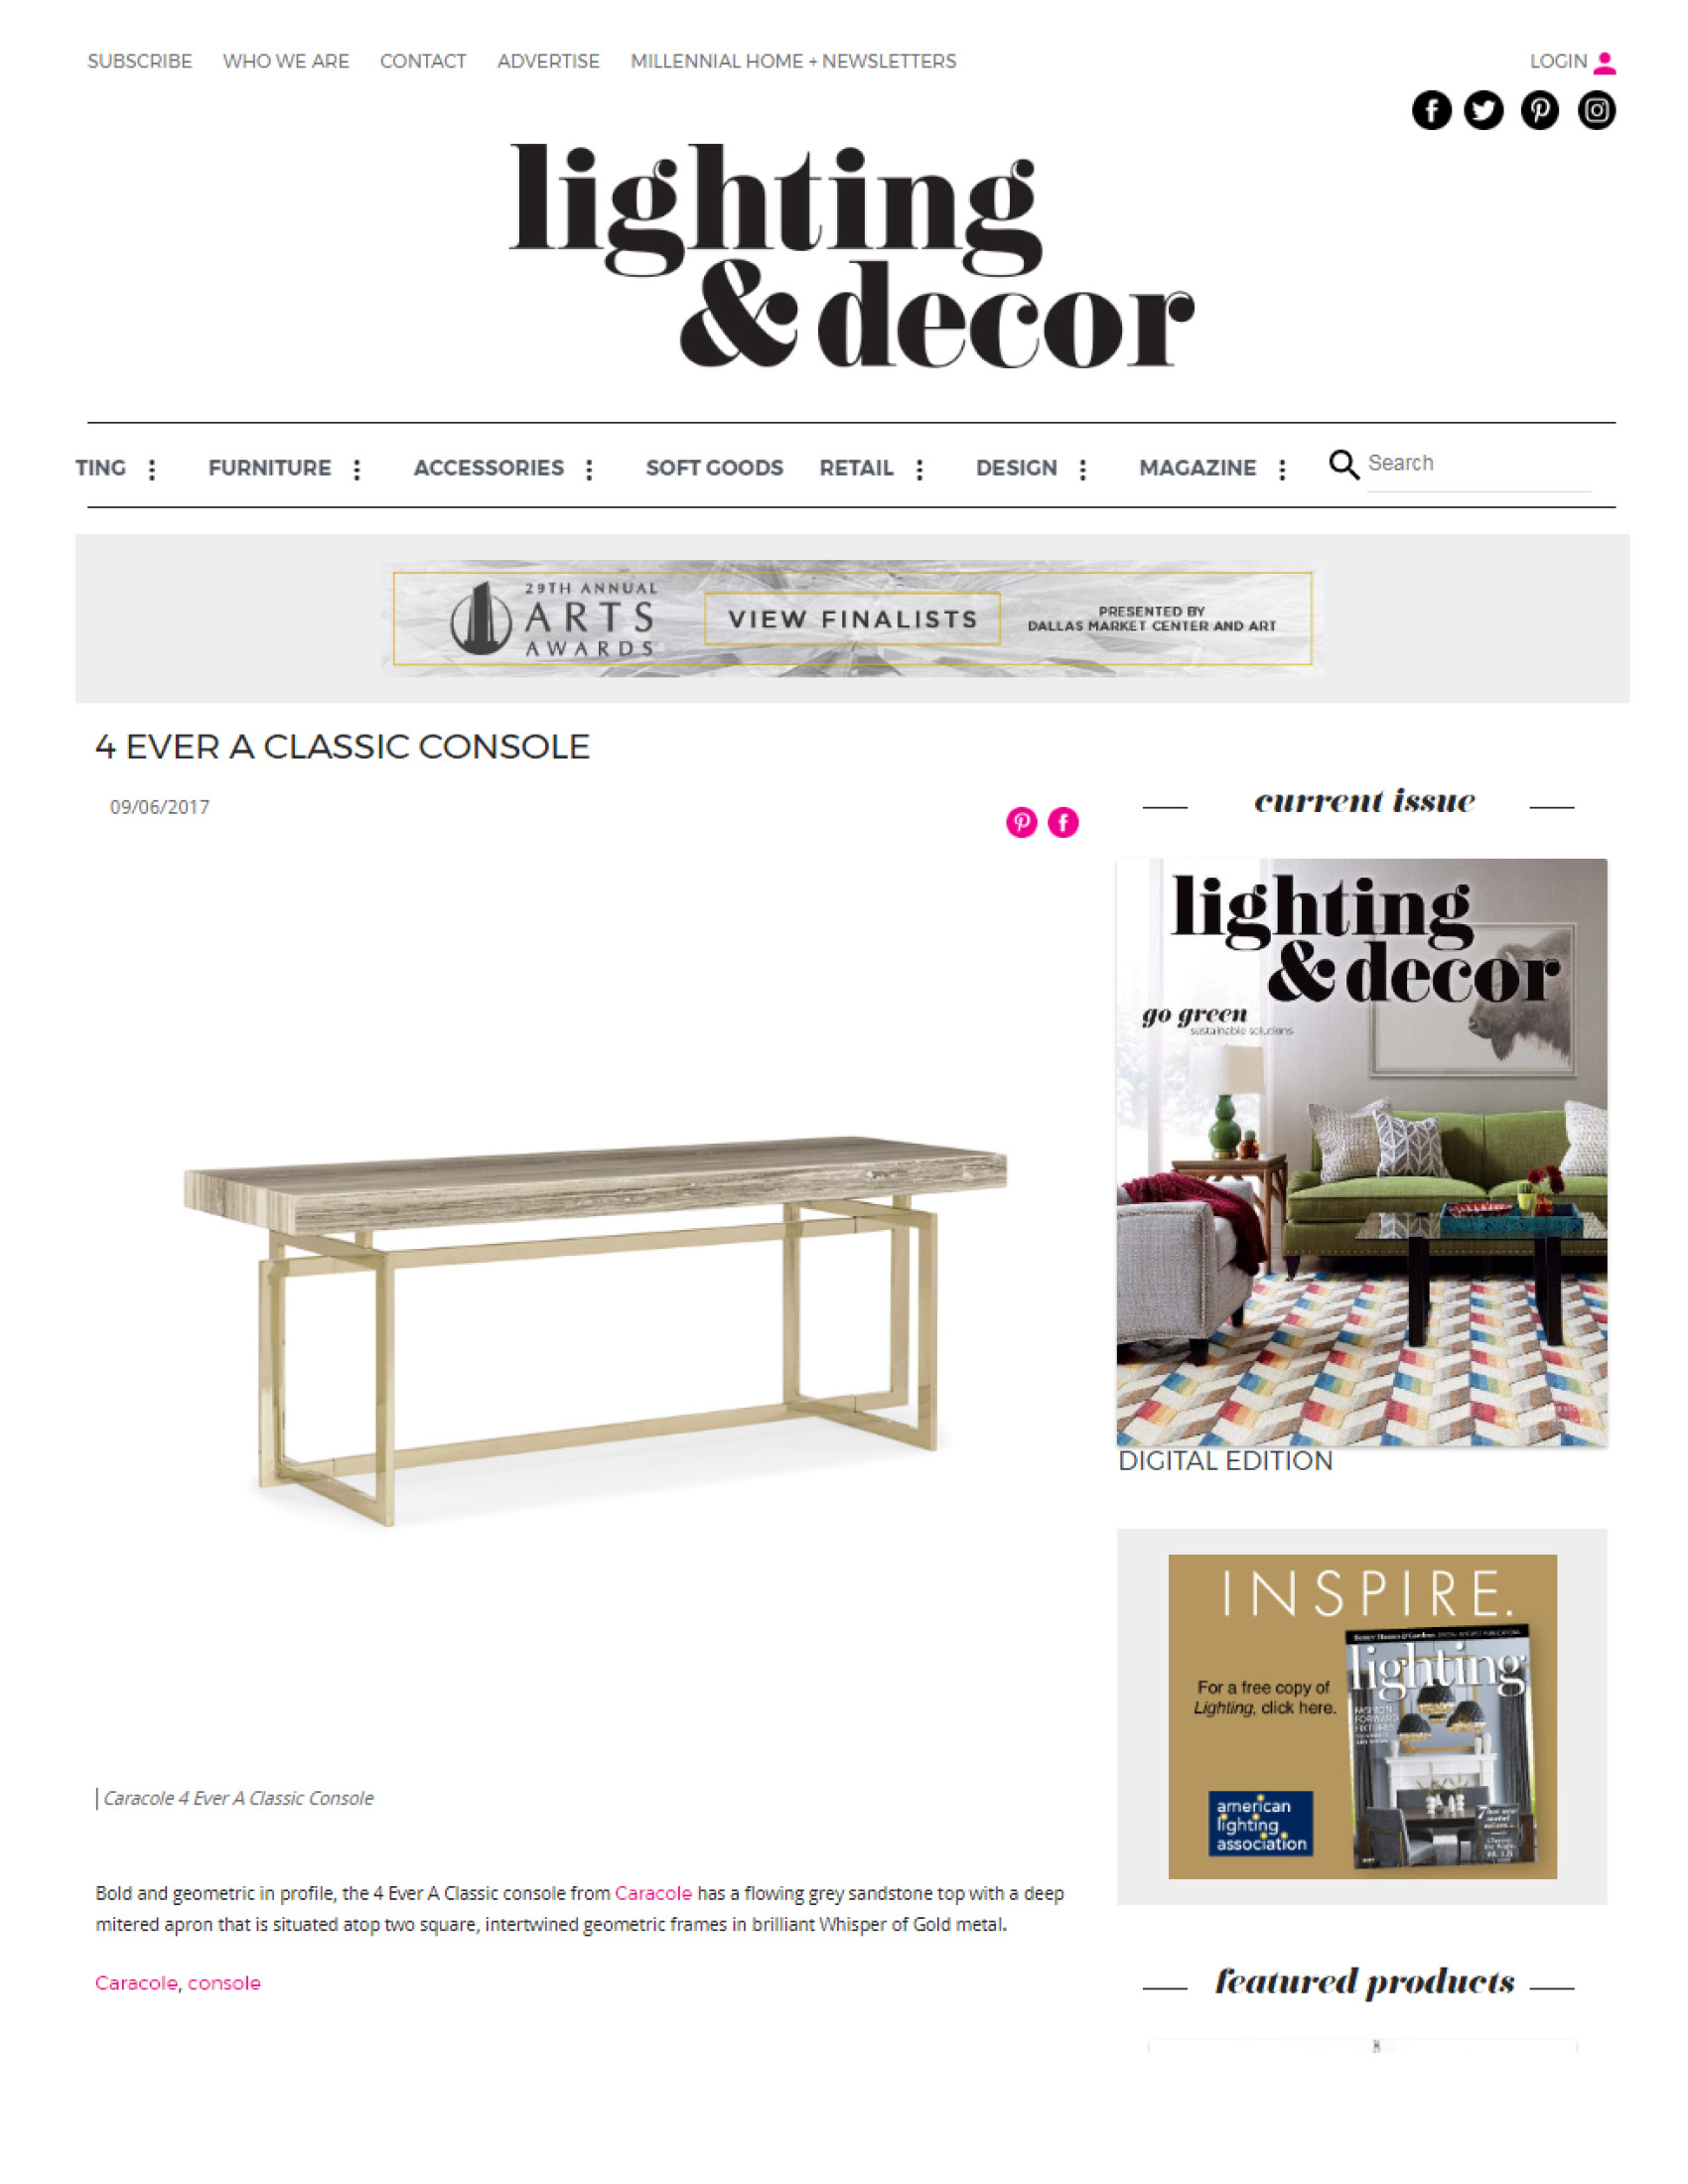 Lighting & Decor Online Product Gallery, September 2017